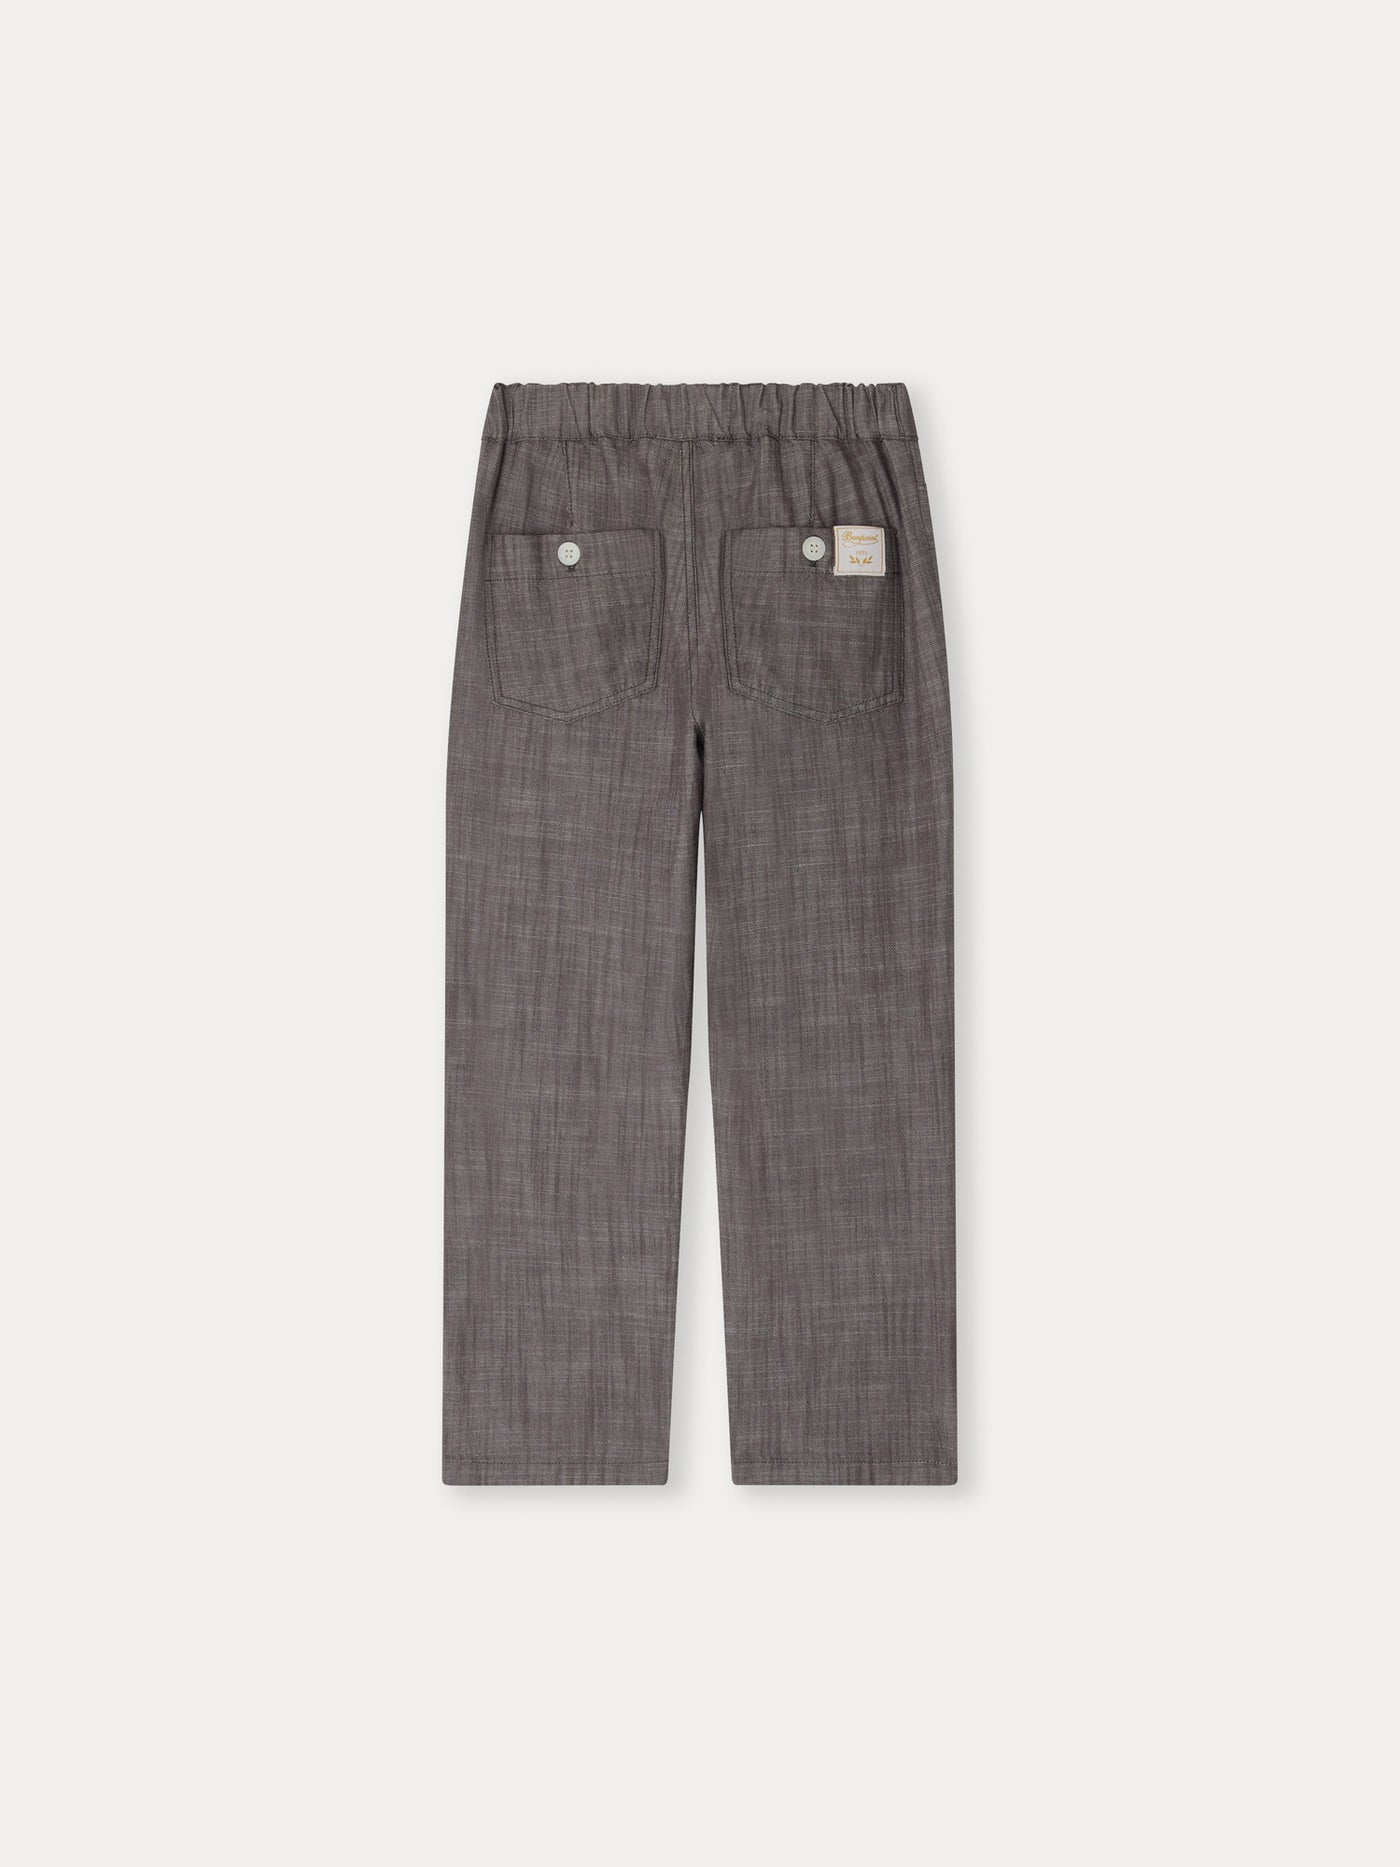 Pantalon Connell gris ardoise